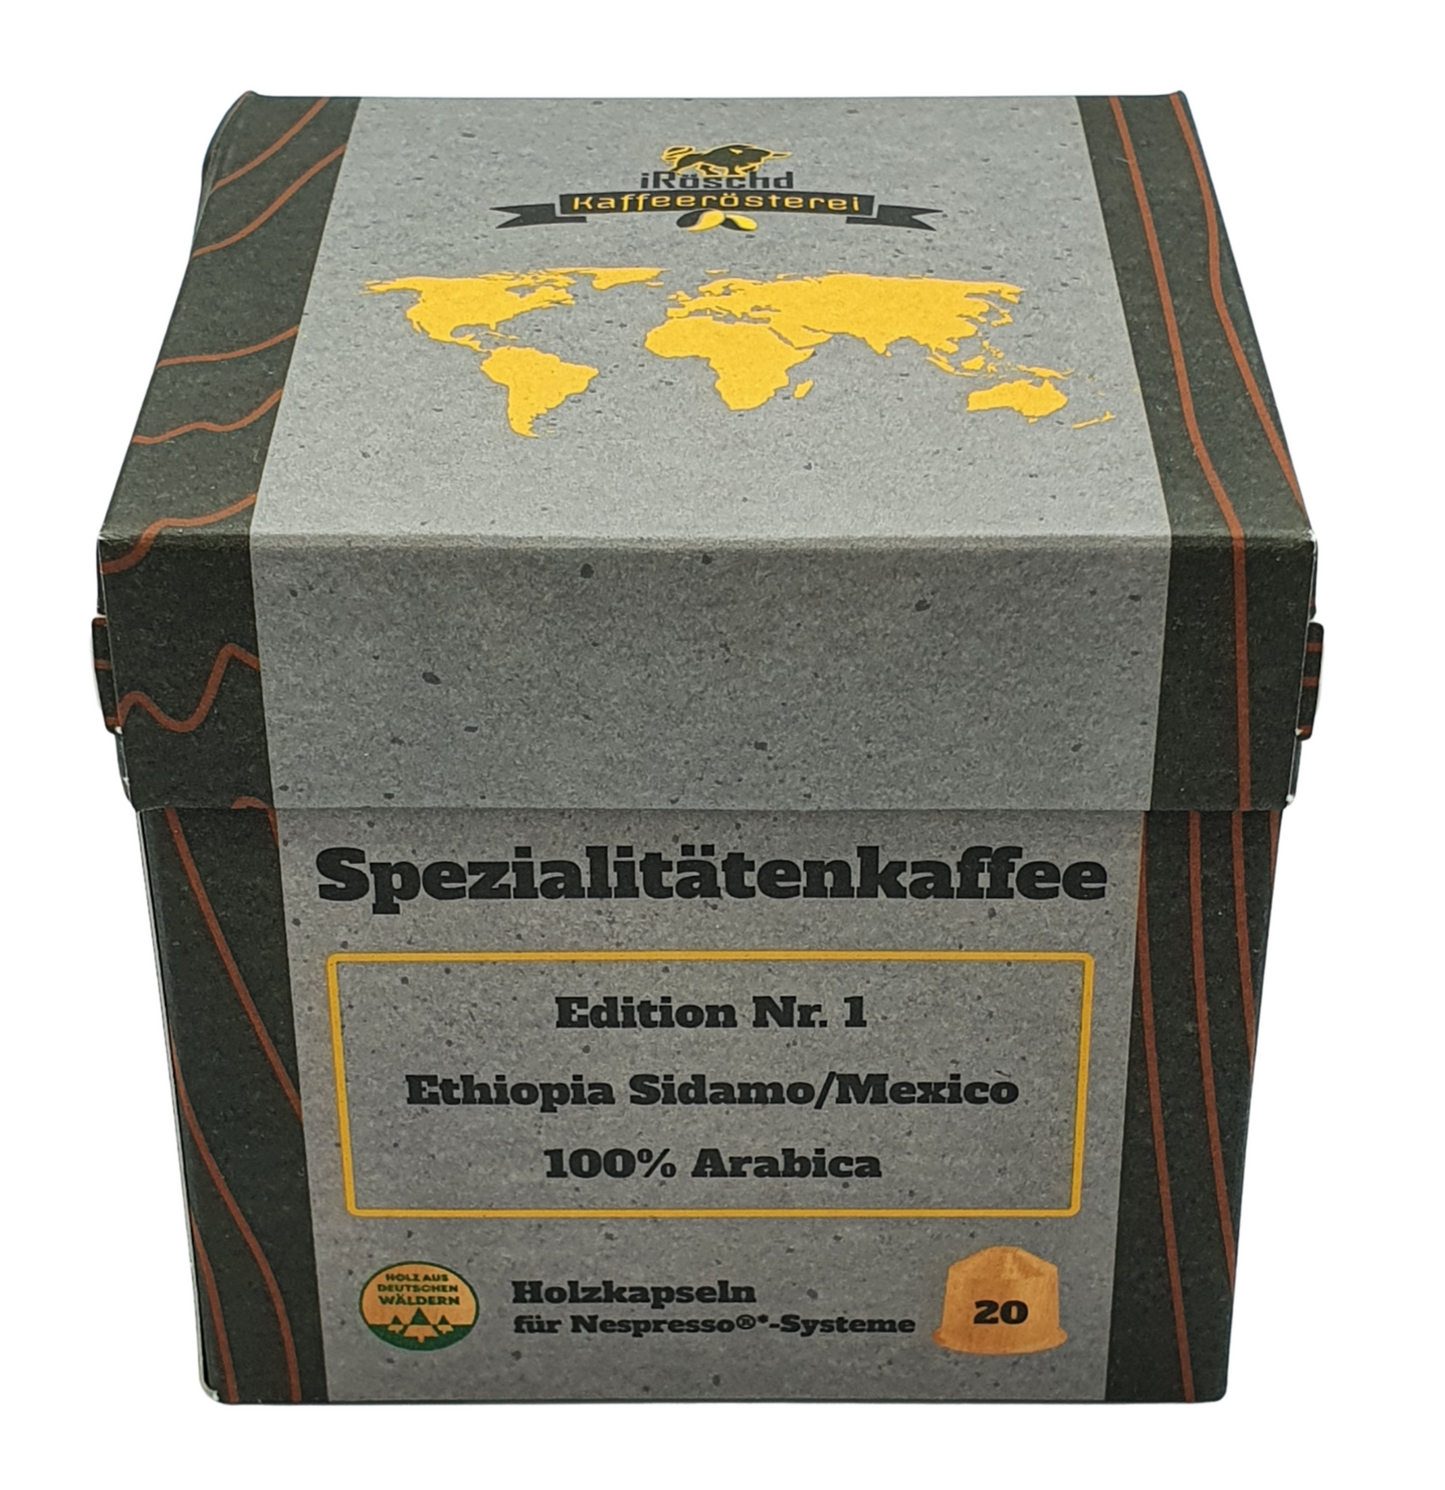 Die Edition Nr. 1 des Spezialitätenkaffees in Holzkapseln. 20 Holzkapseln für Nespressomaschinen. Mit 100% nachhaltigen Materialien. Kaffee aus Ethiopien Sidamo und Mexico. 100% Arabica Kaffee.